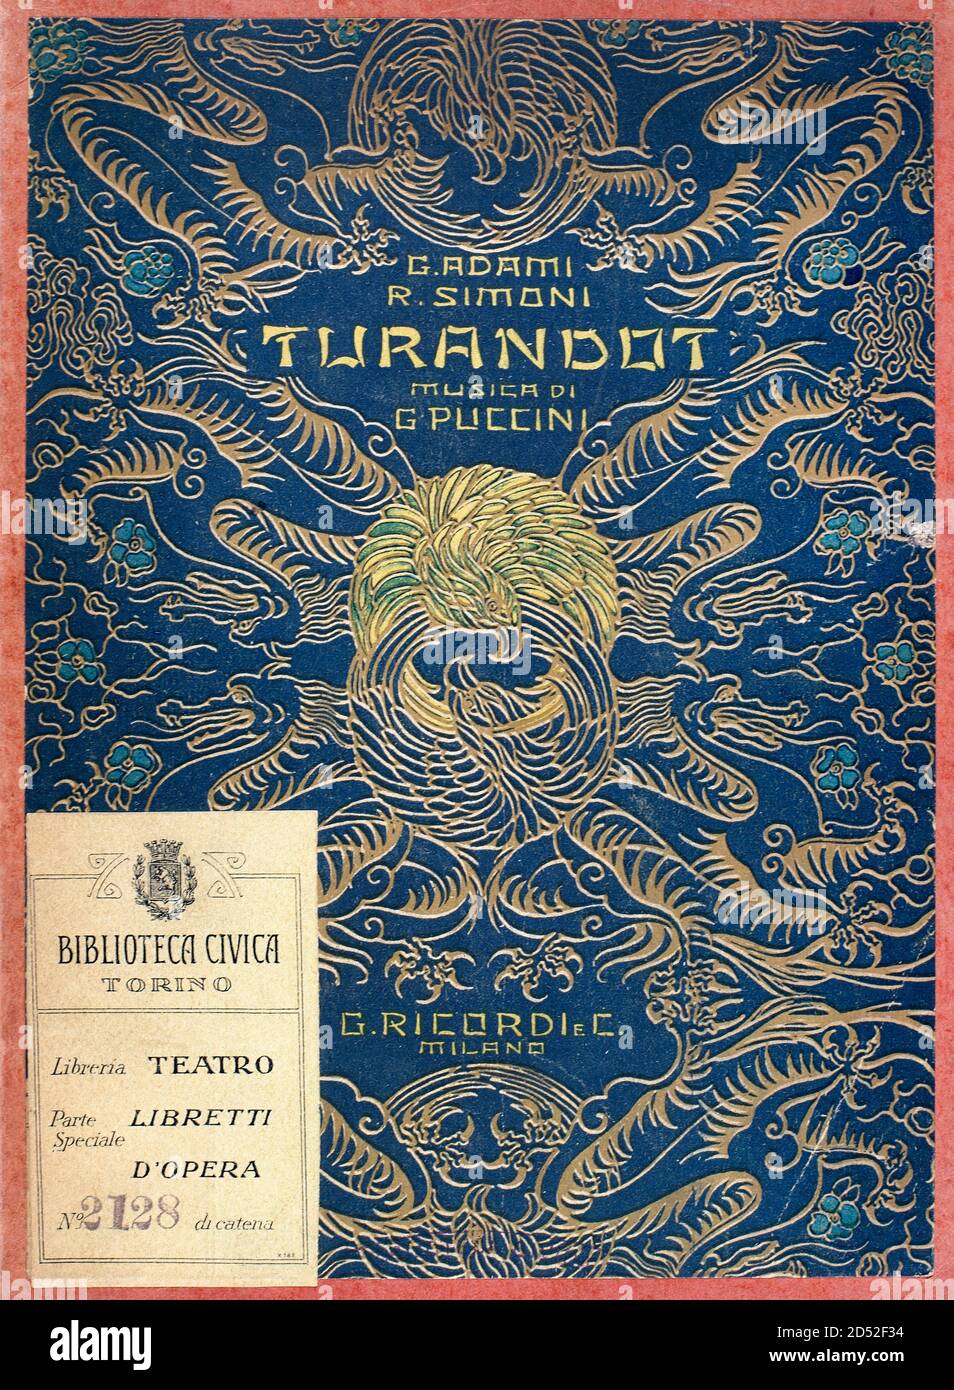 Giacomo Puccini (1858-1924). Compositeur italien. Puccini mourut avant de terminer son dernier opéra, Turandot (livret d'Adami et Renato Simoni, basé sur l'écrivain italien Carlo GozziÕs fable du même nom), qui fut complété par Franco Alfano et produit à titre posthume en 1926. La première représentation a eu lieu au Teatro alla Scala de Milan le 25 avril 1926 et a été réalisée par Arturo Toscanini. Couverture du livret pour l'opéra 'Turandot'. Opéra en trois actes. Biblioteche civiche torinesi. Bibliothèque musicale. Turin, Italie. Banque D'Images